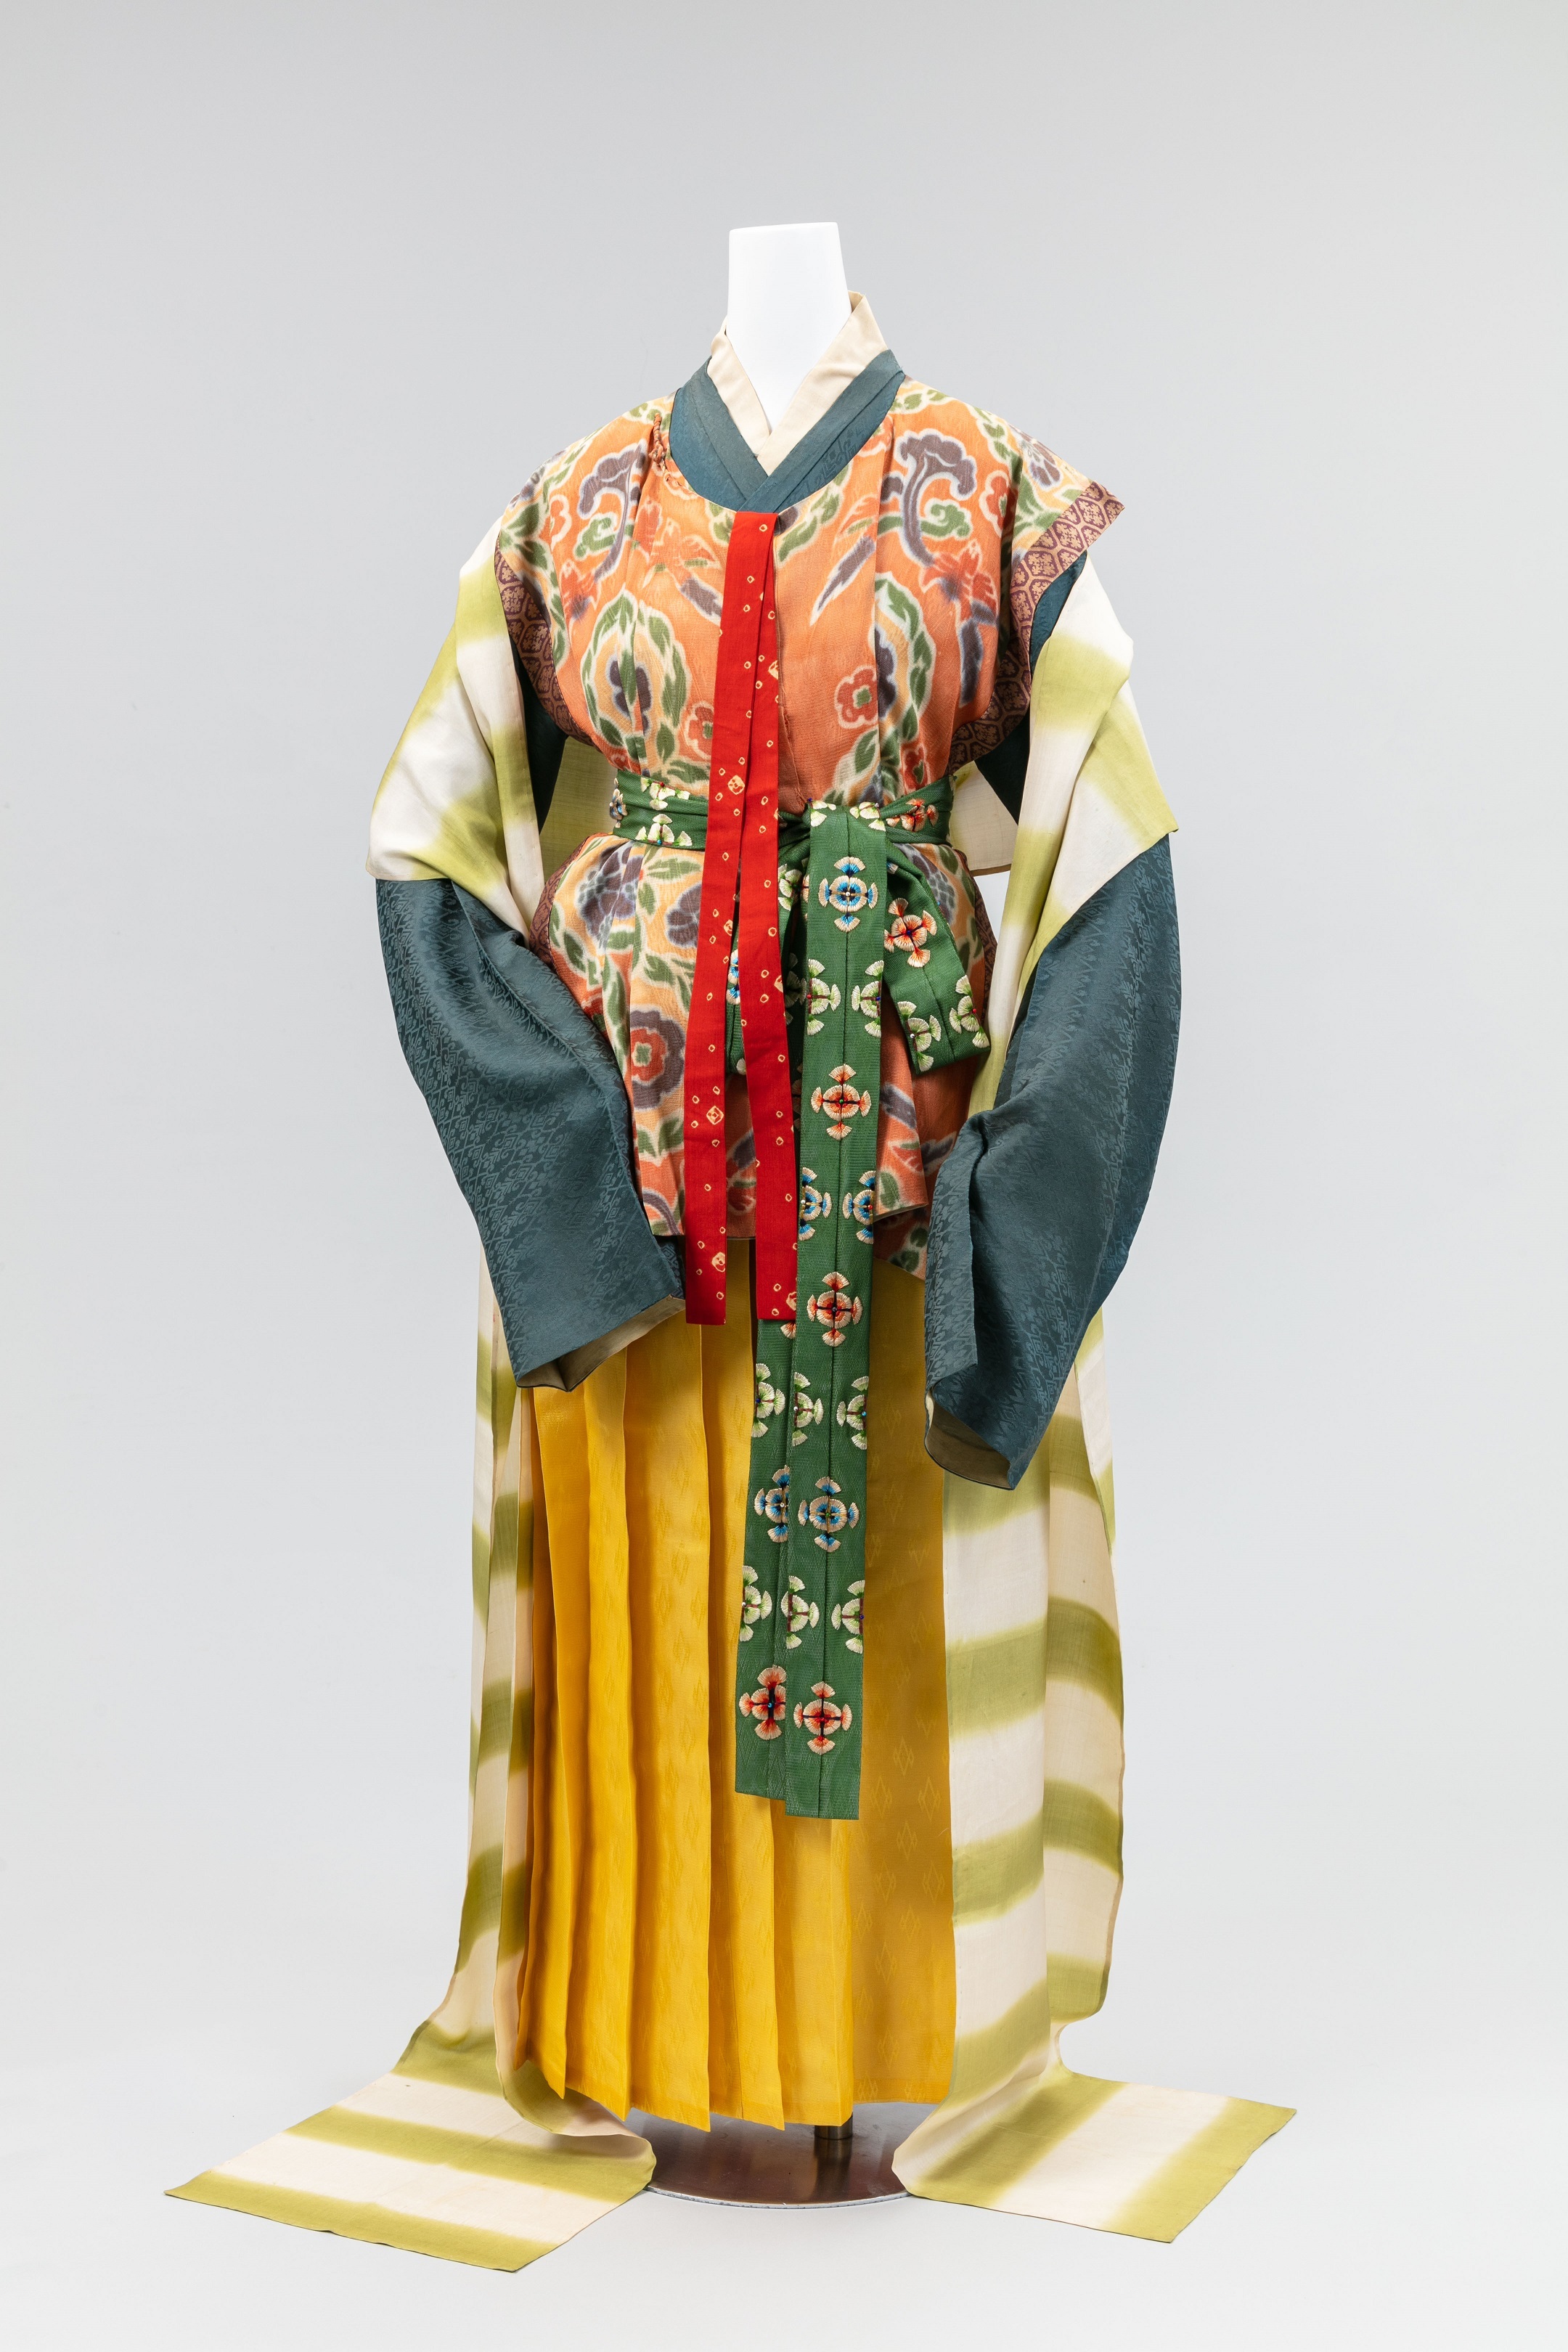 日本女性の衣服の移り変わりを巡る 再現 女性の服装1500年 京都の染織技術の粋 開催 古墳時代から明治時代 初期までの女性の服装 公益社団法人京都染織文化協会のプレスリリース